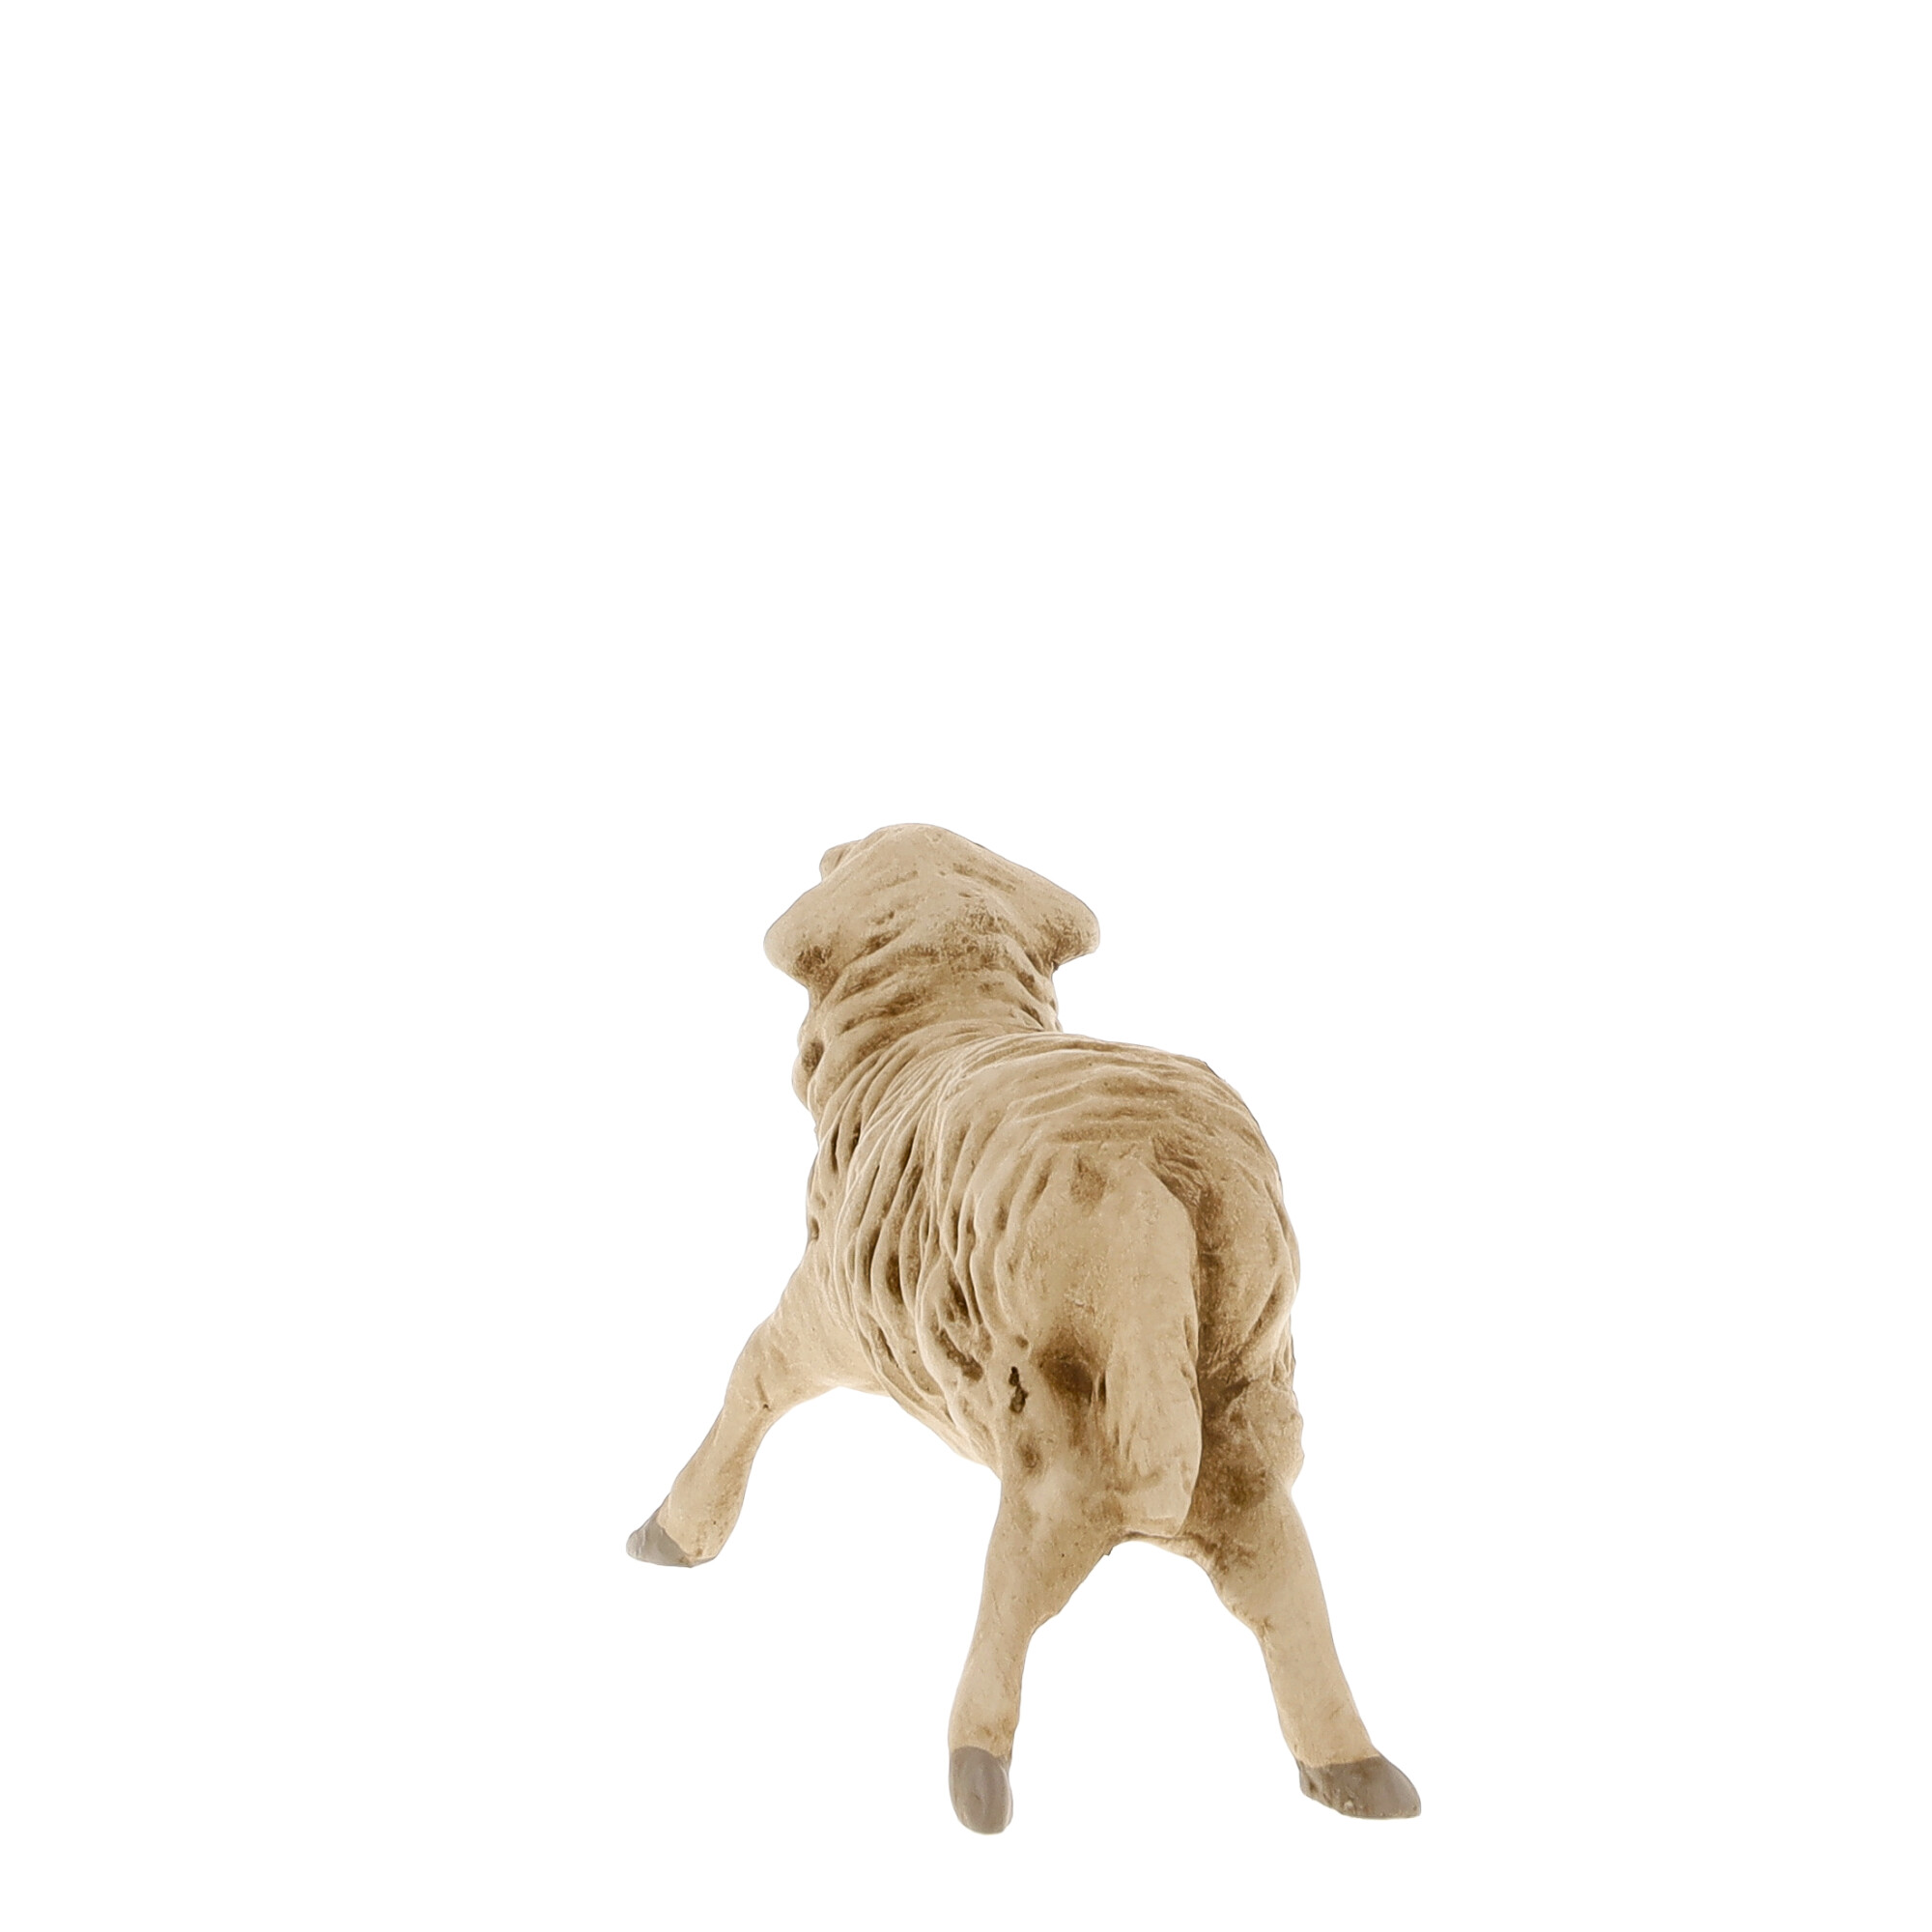 Schaf springend, zu 11 - 12cm Figuren passend - MAROLIN Krippenfigur